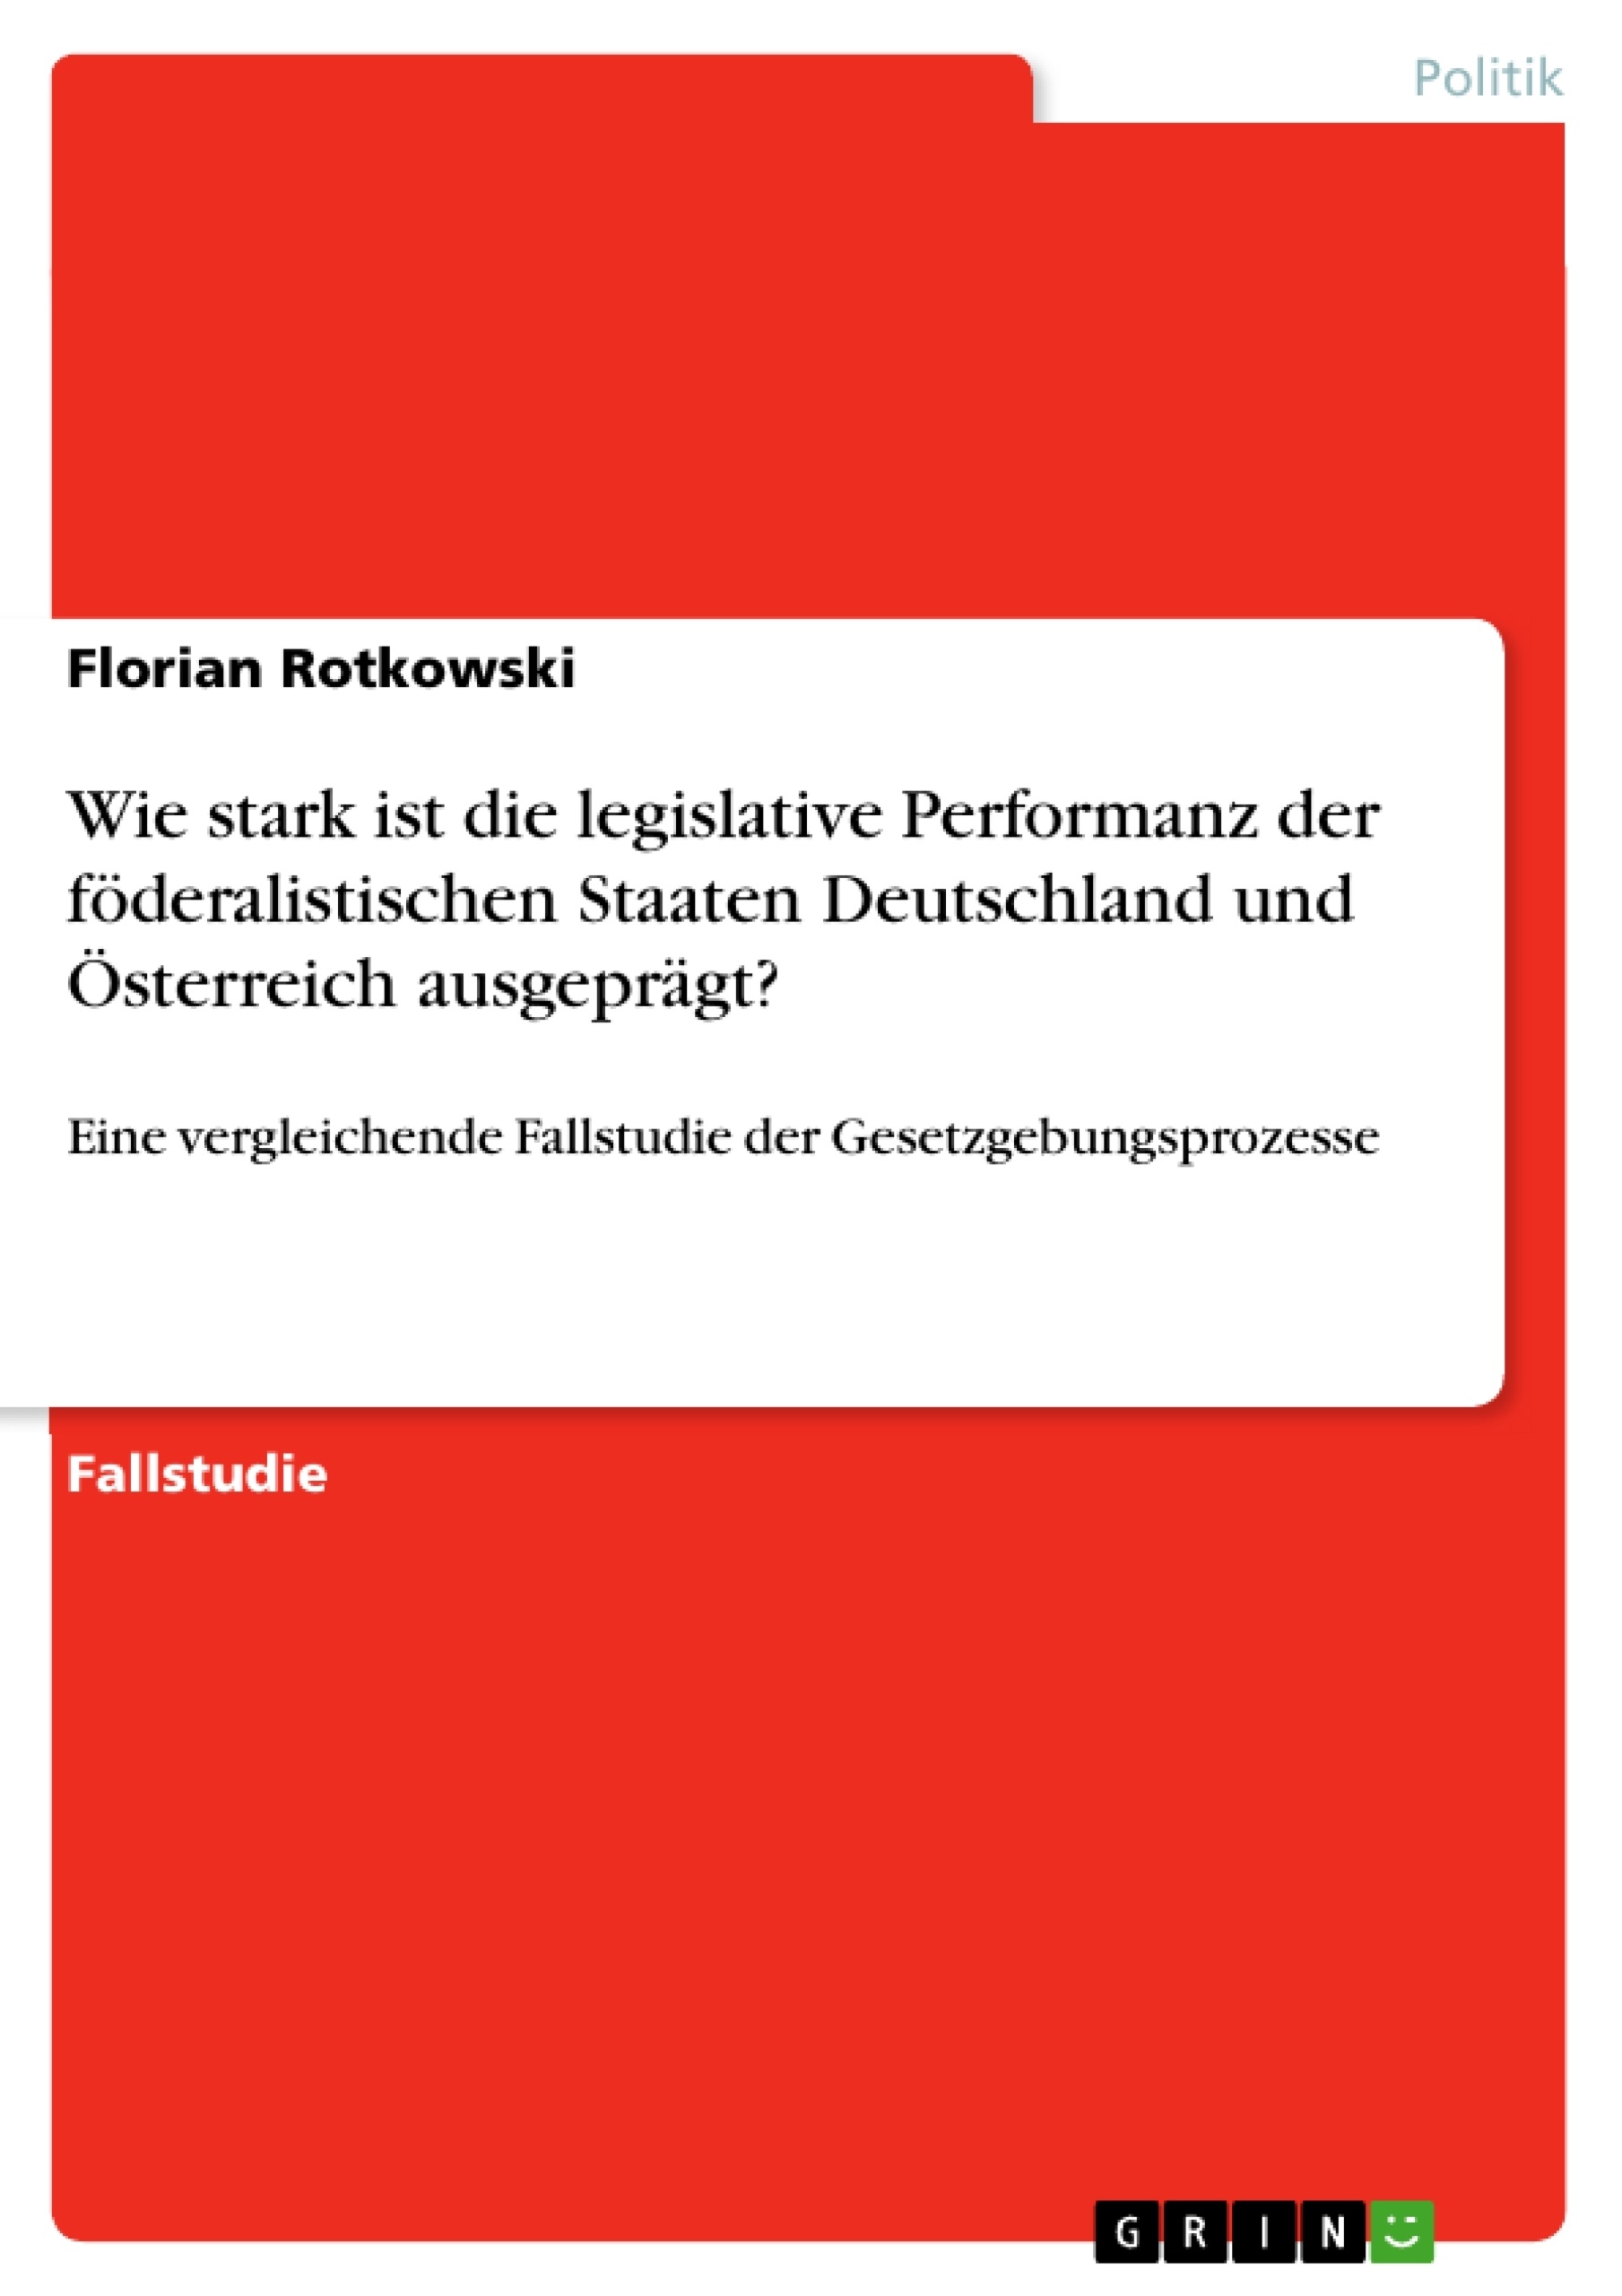 Titel: Wie stark ist die legislative Performanz der föderalistischen Staaten Deutschland und Österreich ausgeprägt?